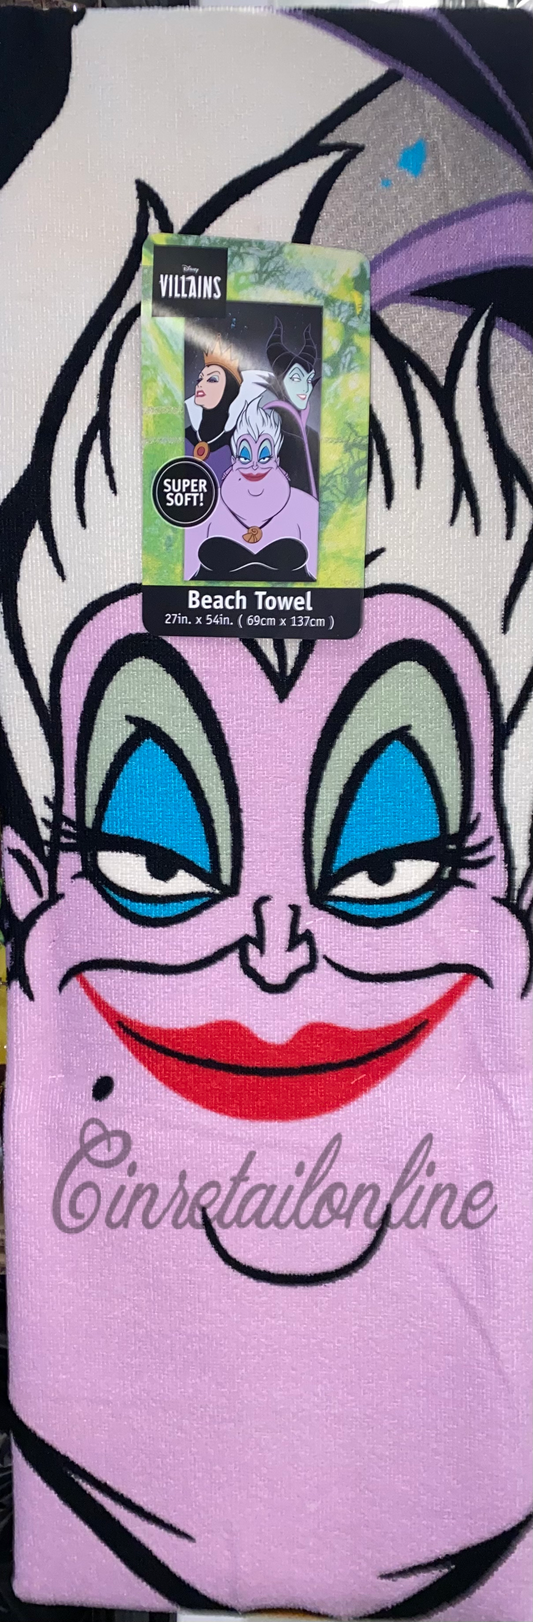 Villains beach towel